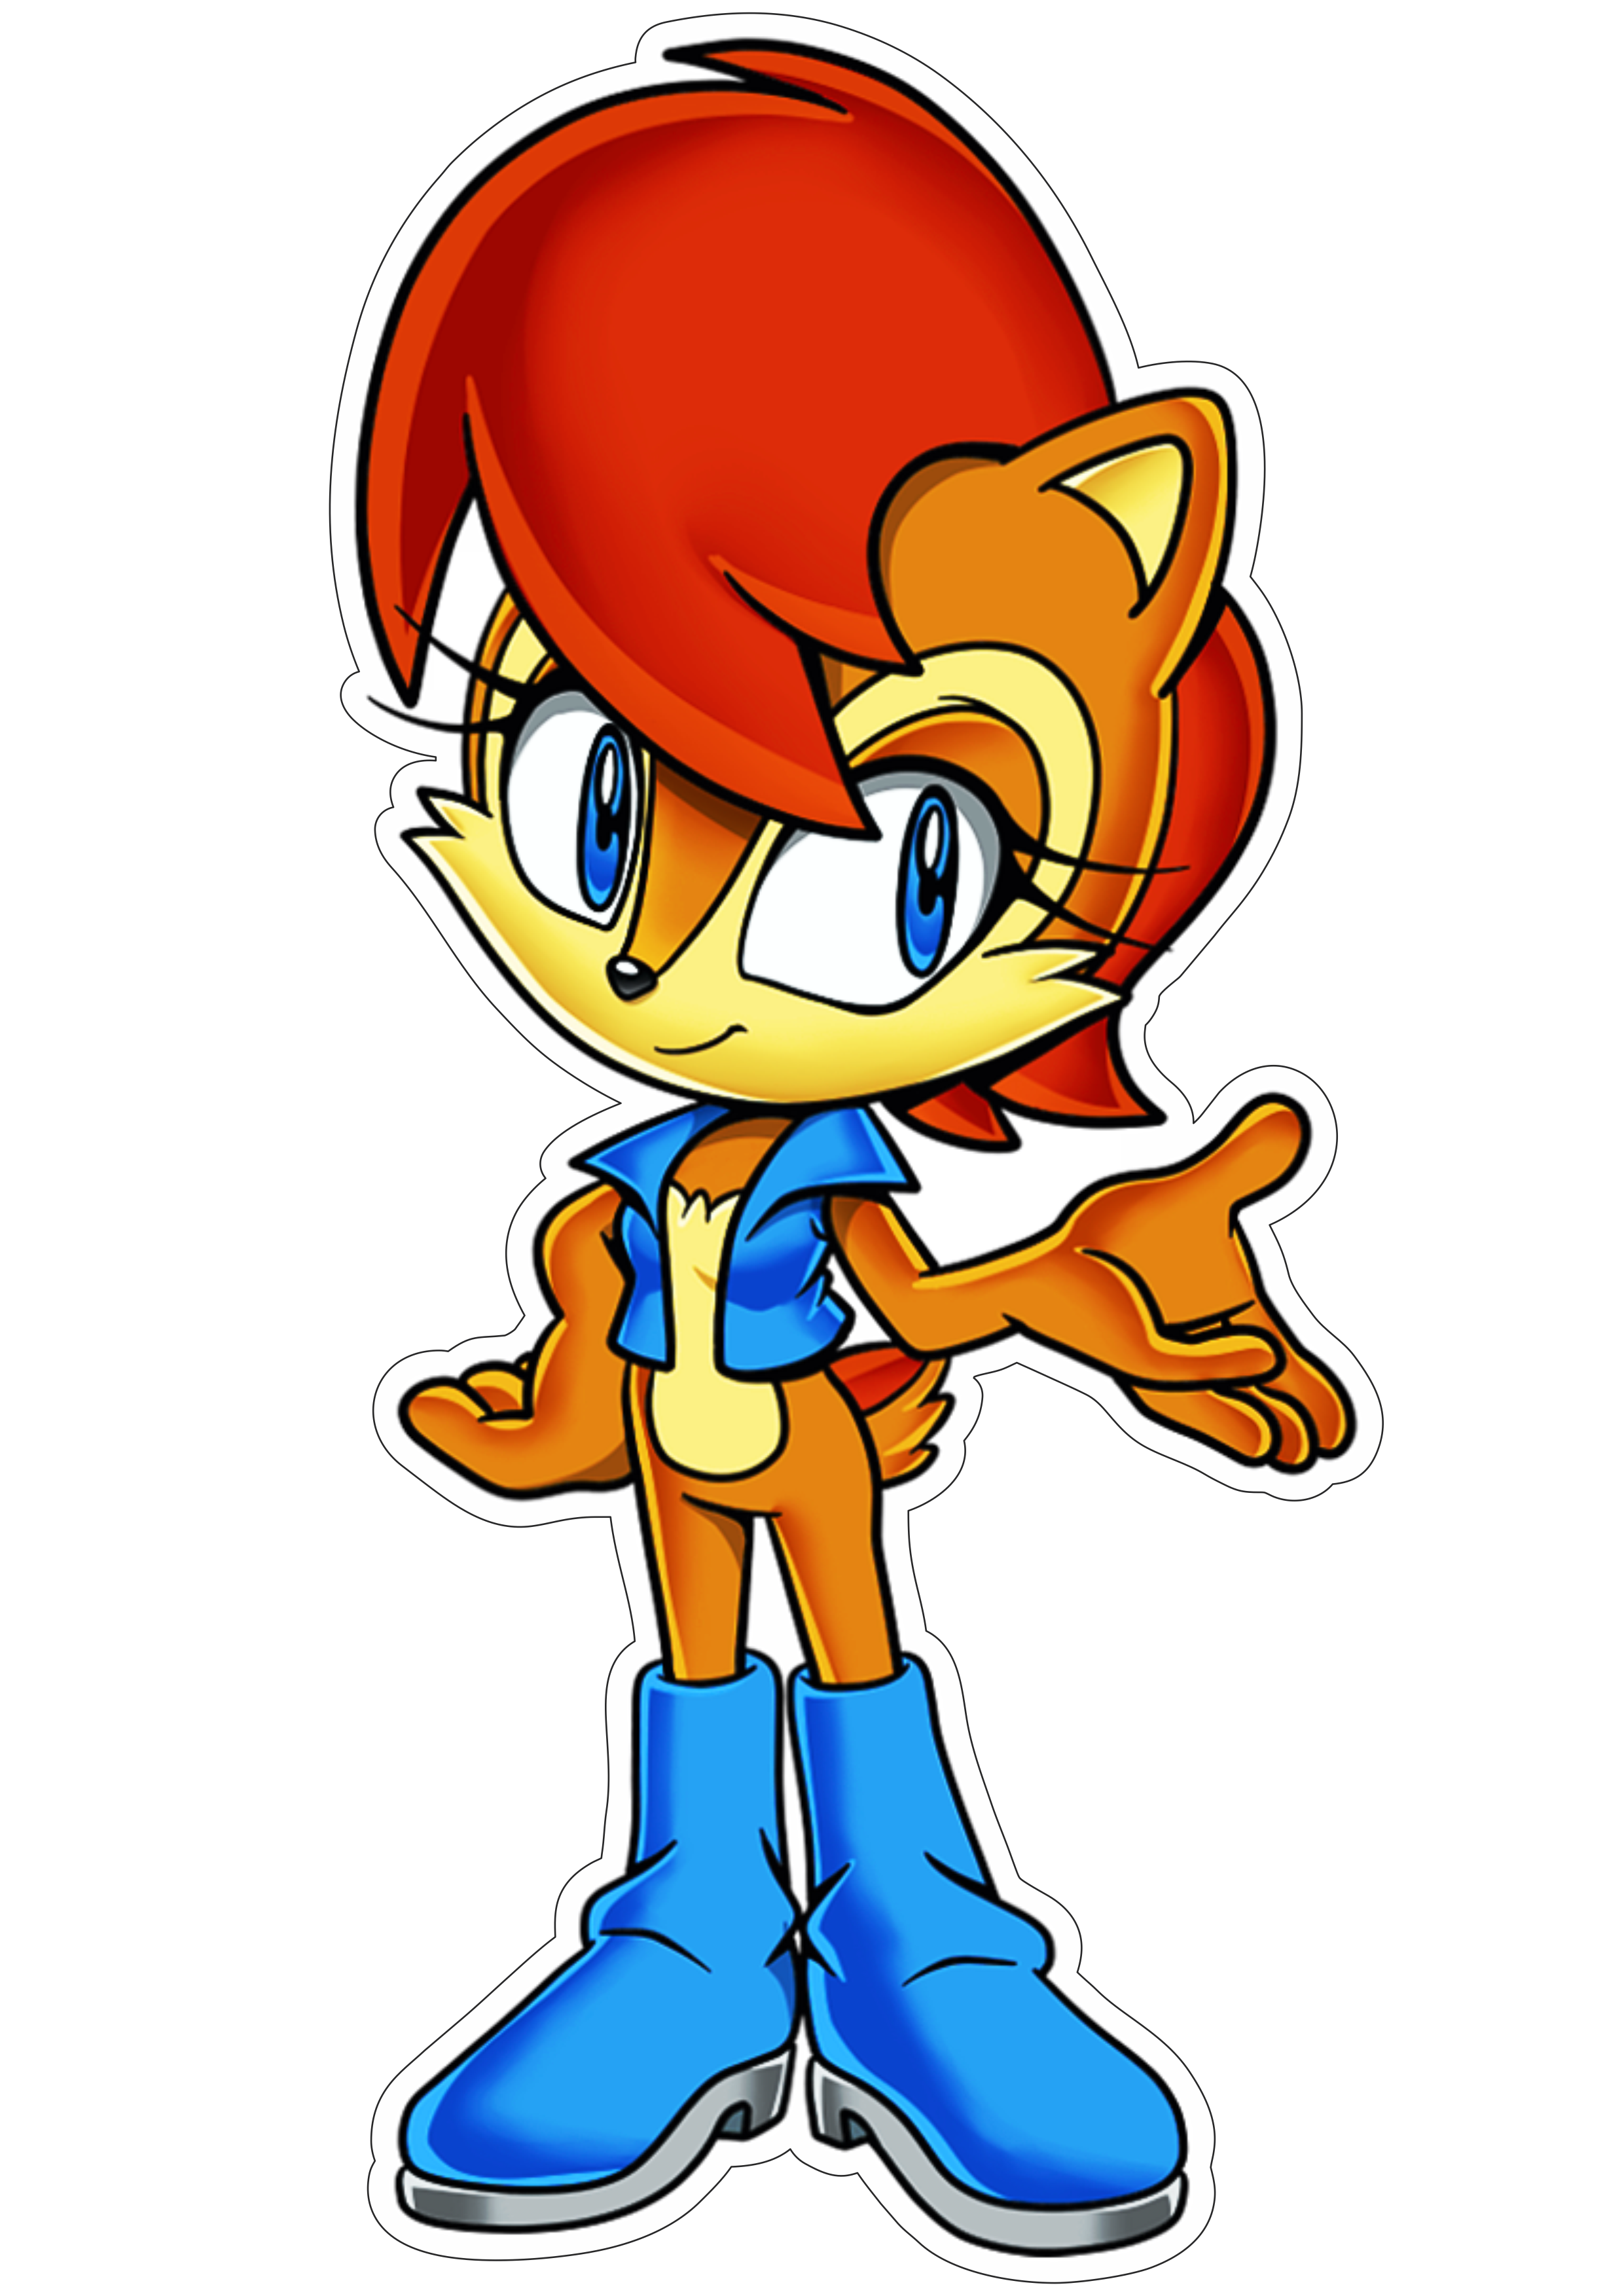 Sonic the hedgehog personagem de game fundo transparente com contorno desenho infantil png